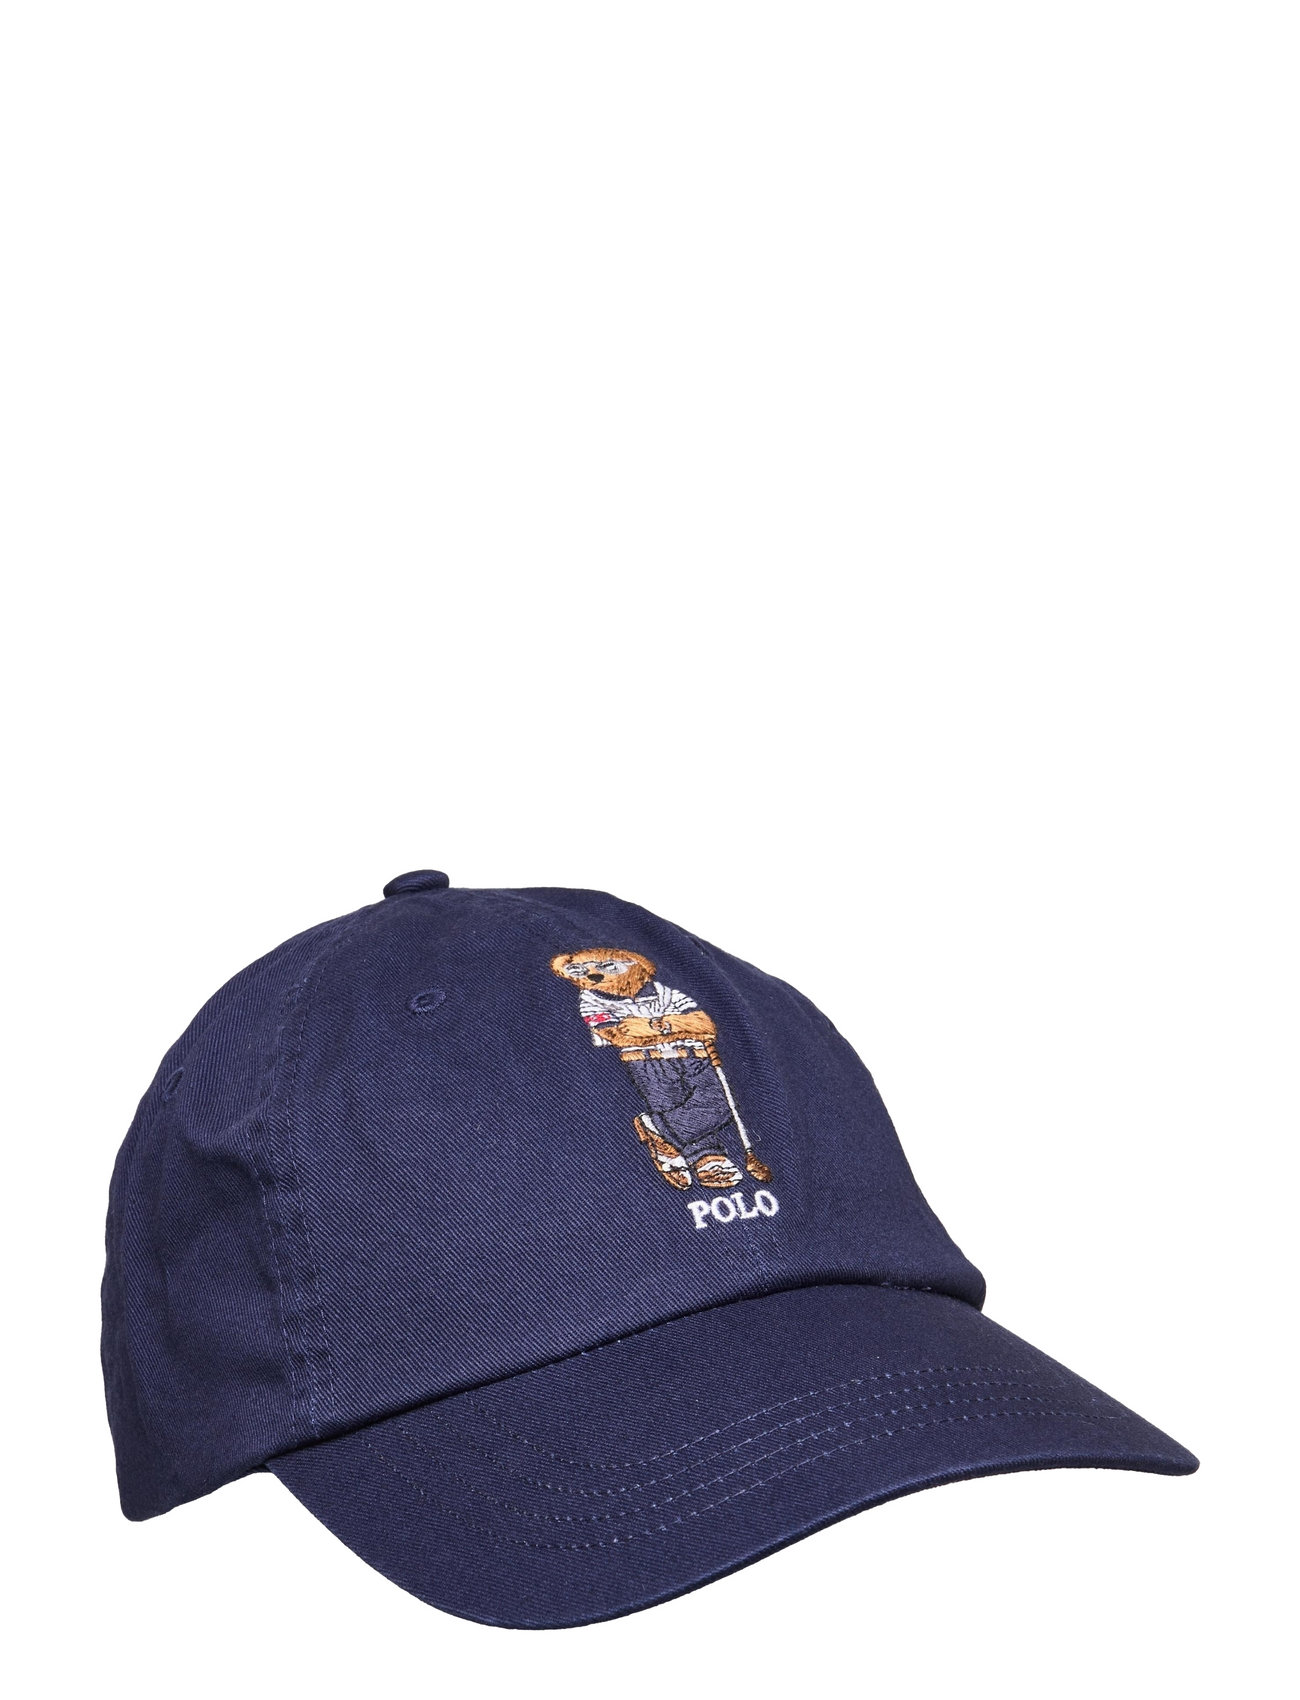 Ralph Lauren Golf Polo Bear Twill Ball Cap - Caps 